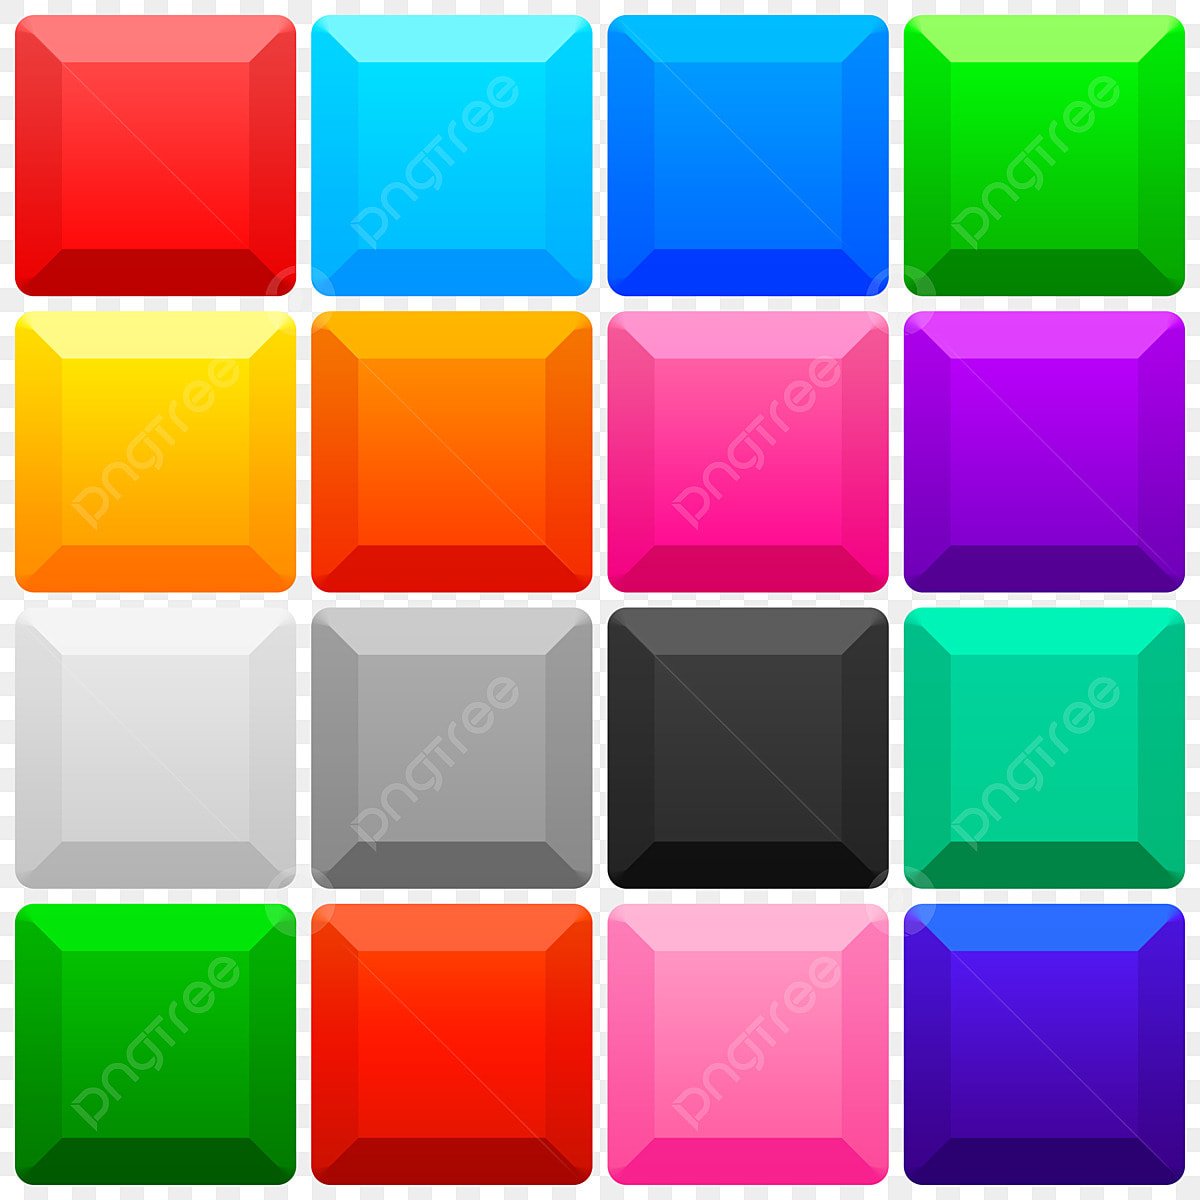 Маленький цветные квадратики. Разноцветные квадратики маленькие. Разноцветные кнопки. Цветные кнопки квадратные. Цвета в квадратах.